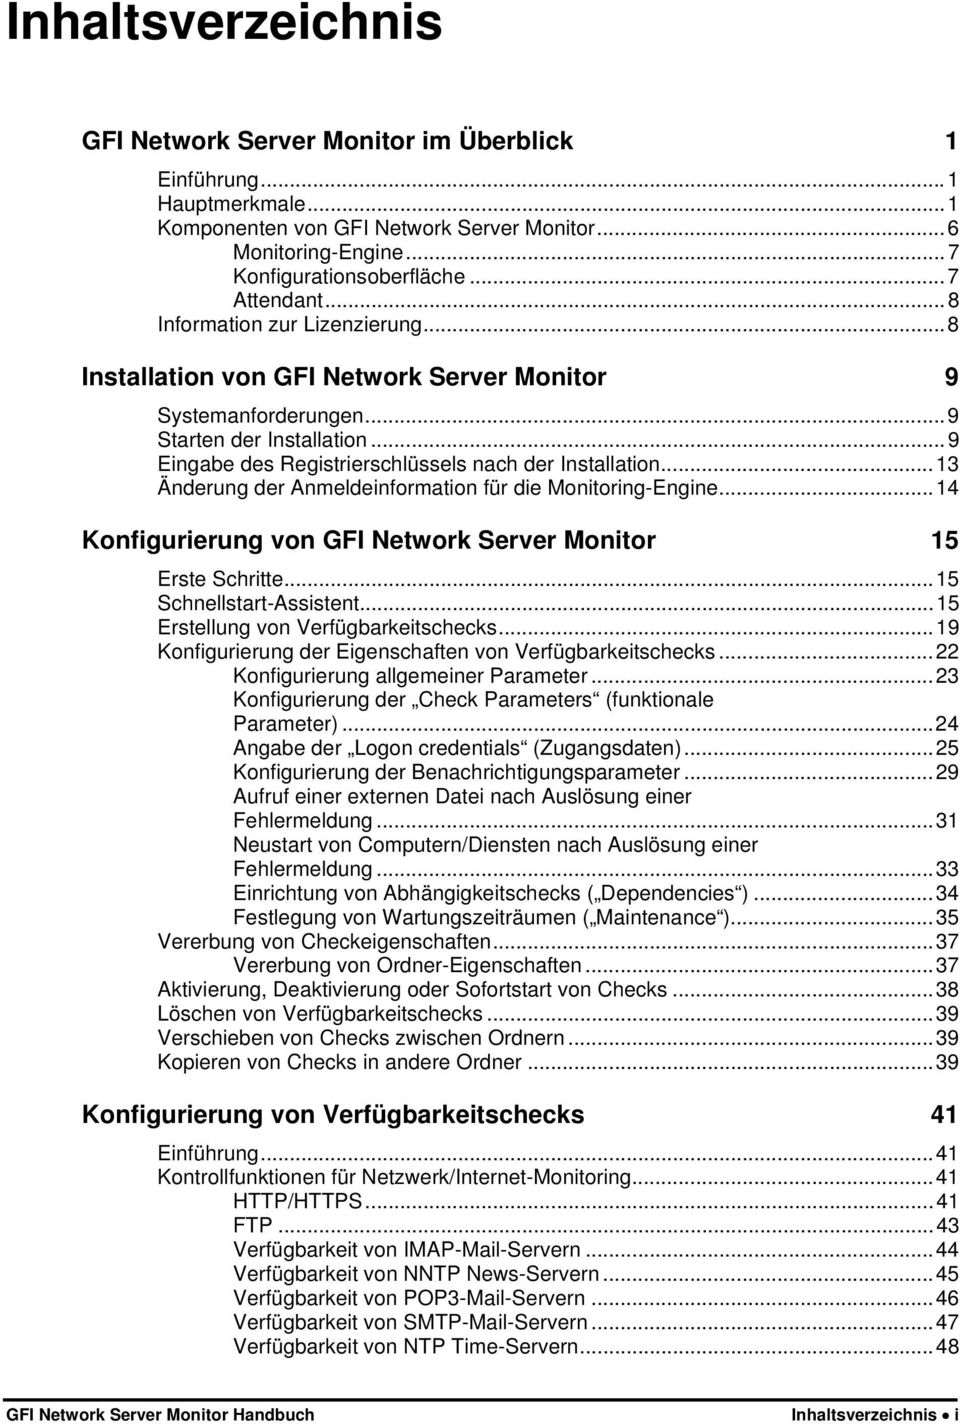 ..13 Änderung der Anmeldeinformation für die Monitoring-Engine...14 Konfigurierung von GFI Network Server Monitor 15 Erste Schritte...15 Schnellstart-Assistent...15 Erstellung von Verfügbarkeitschecks.